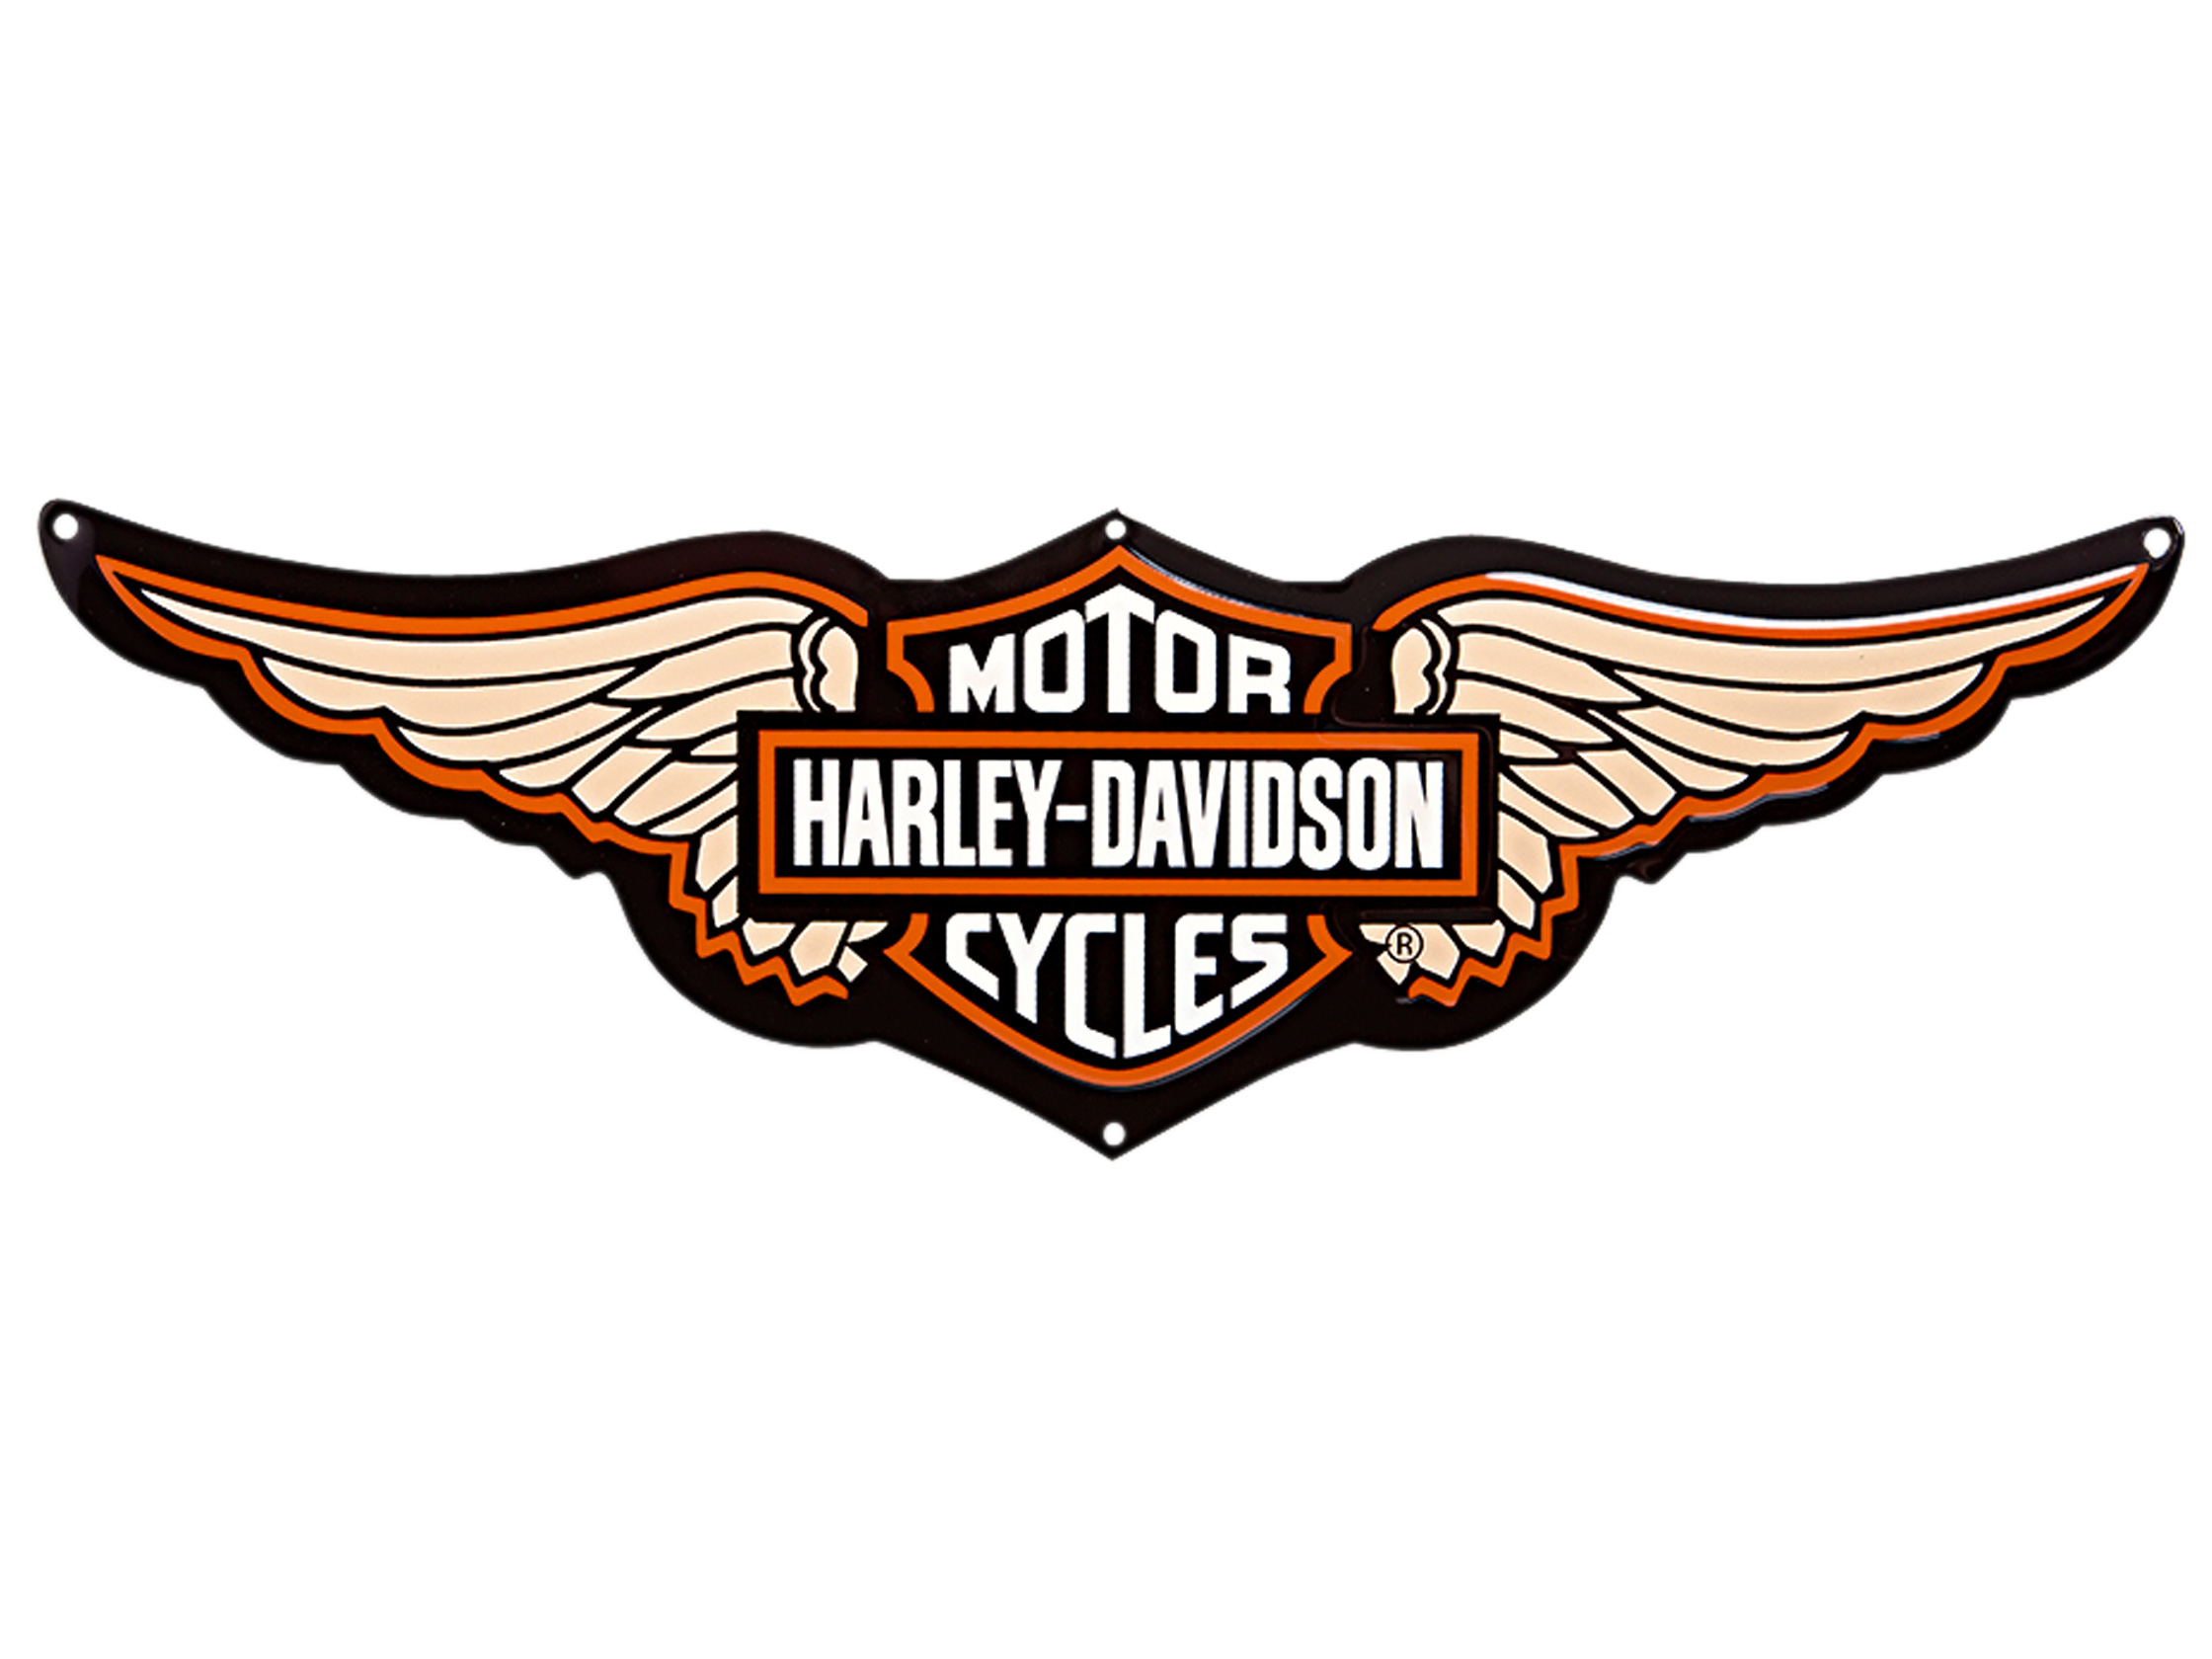 Harley Davidson Logos Free - Cliparts.co